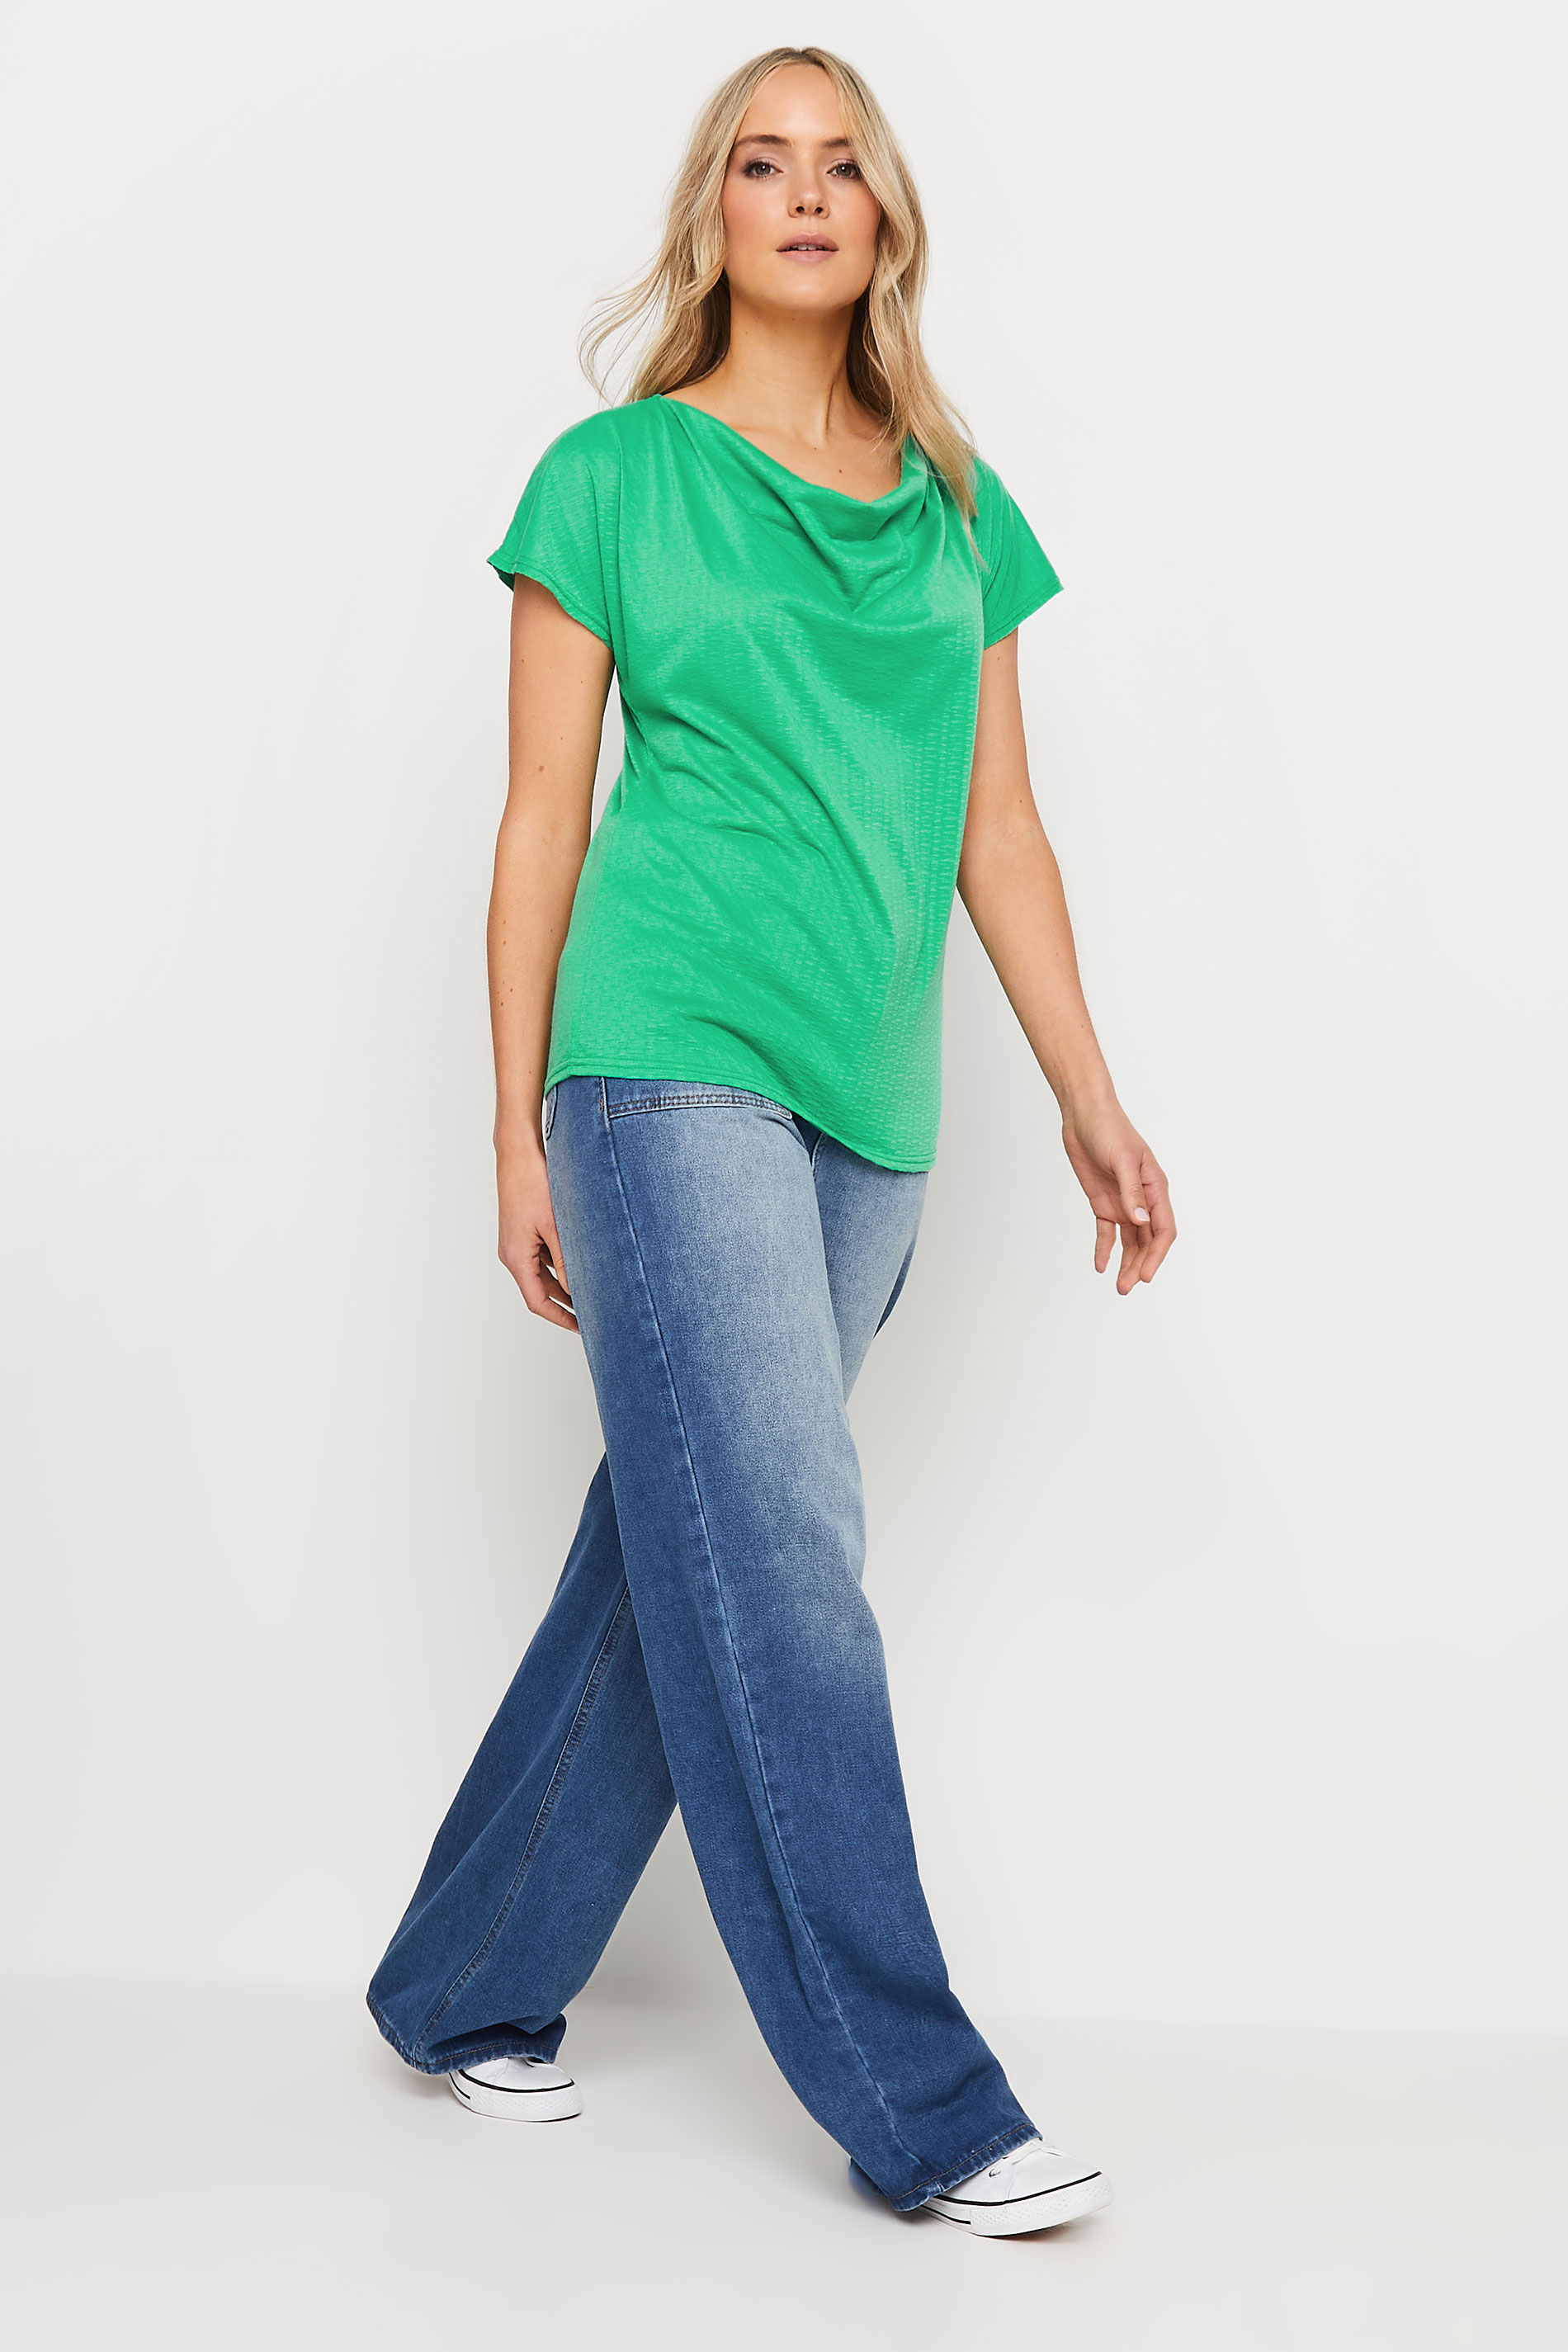 LTS Tall Women's Green Textured Cowl Neck Top | Long Tall Sally 2